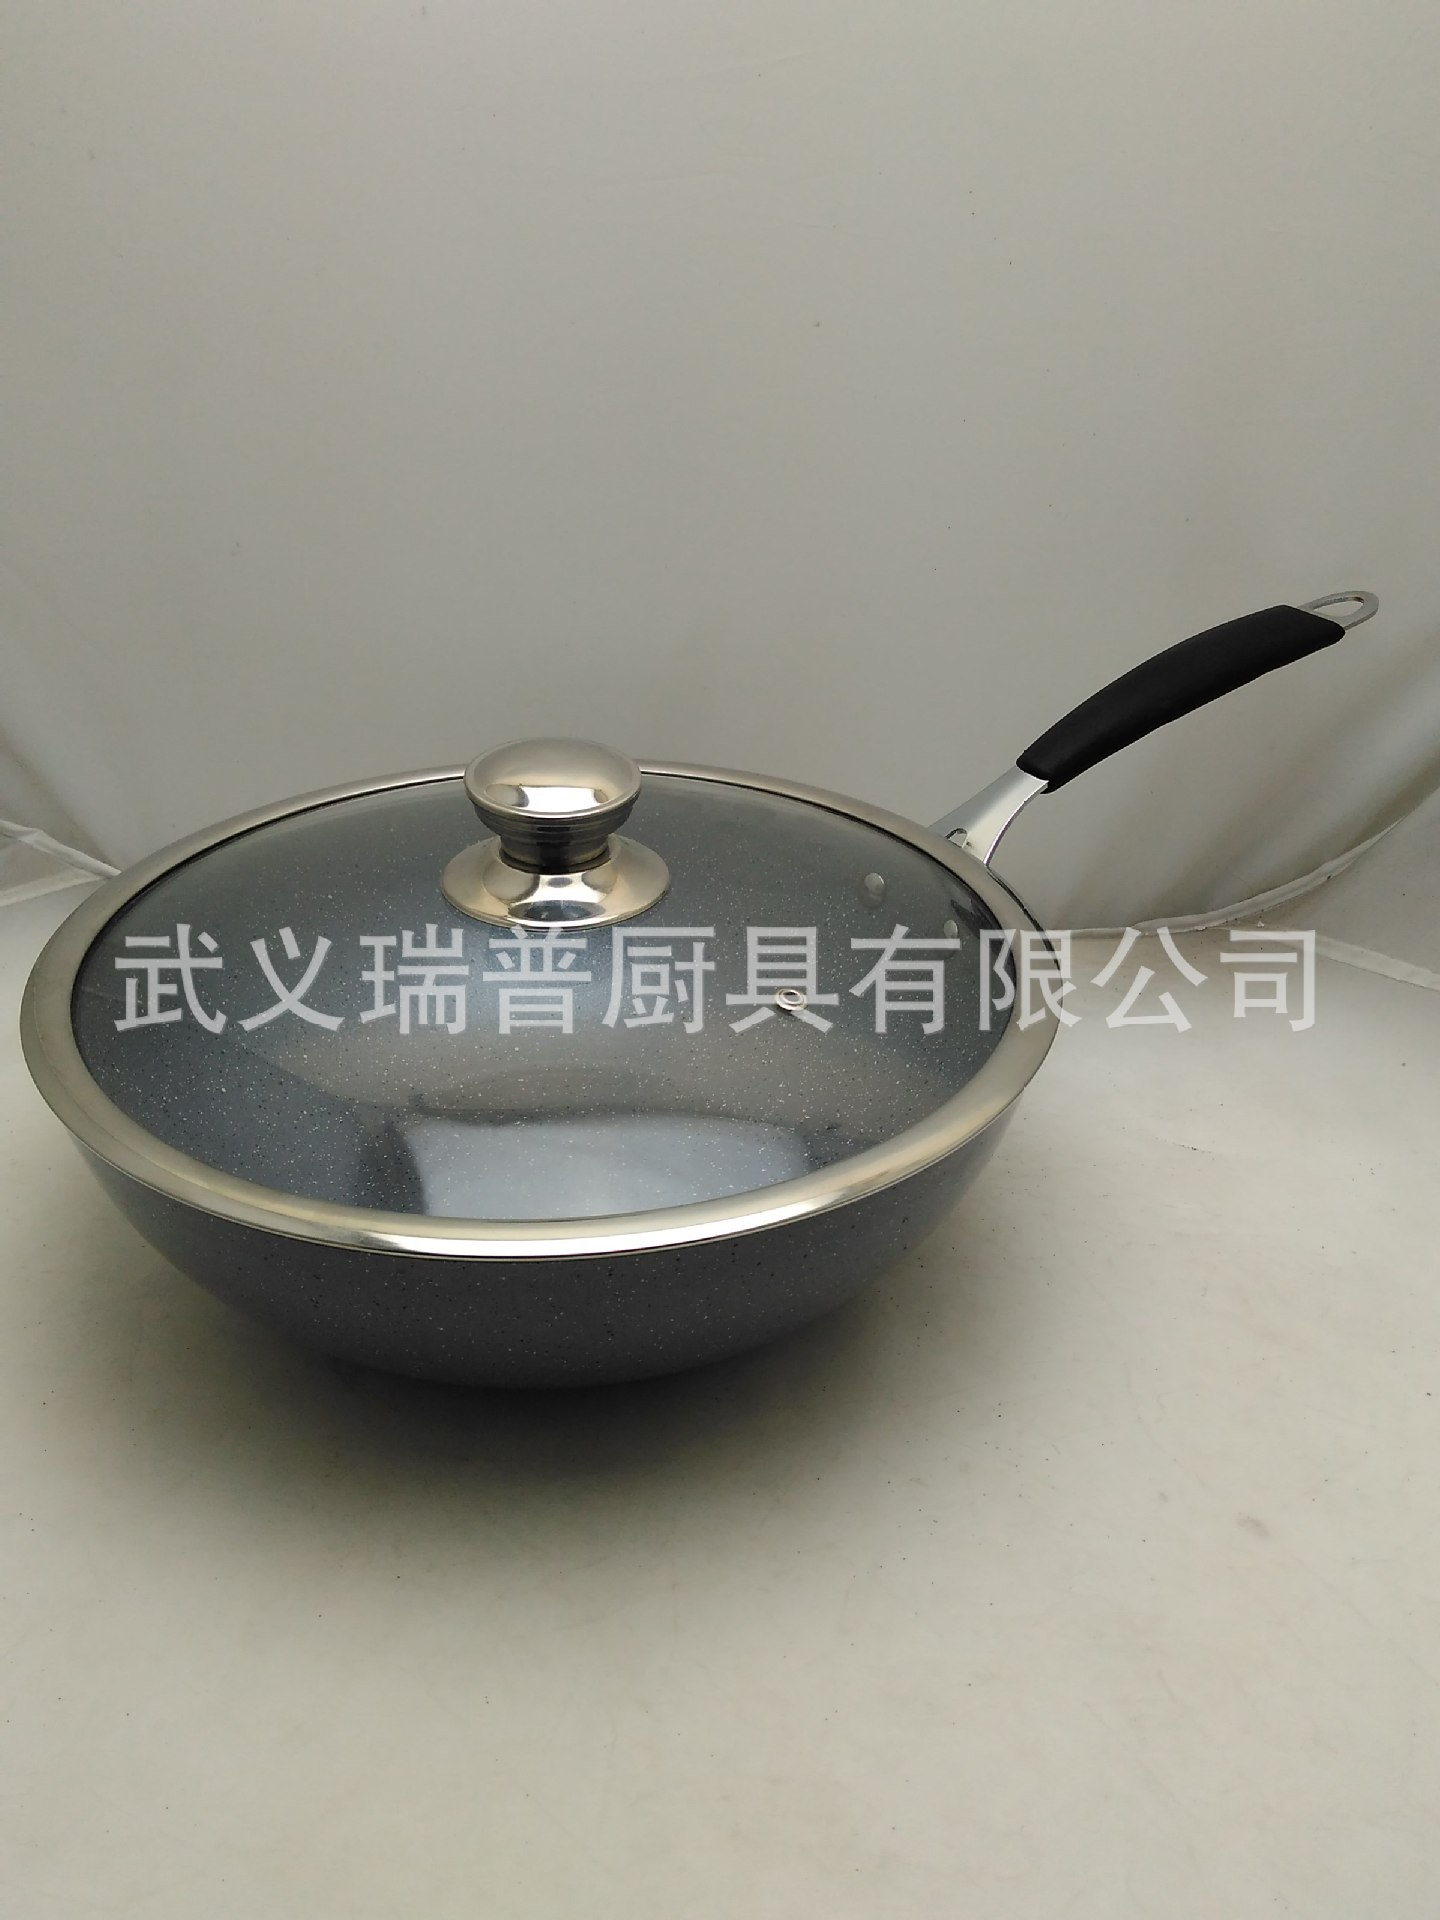 韓國不粘鍋 平底麥飯石炒鍋 無油煙不粘鋁鍋 燃氣灶電磁爐通用